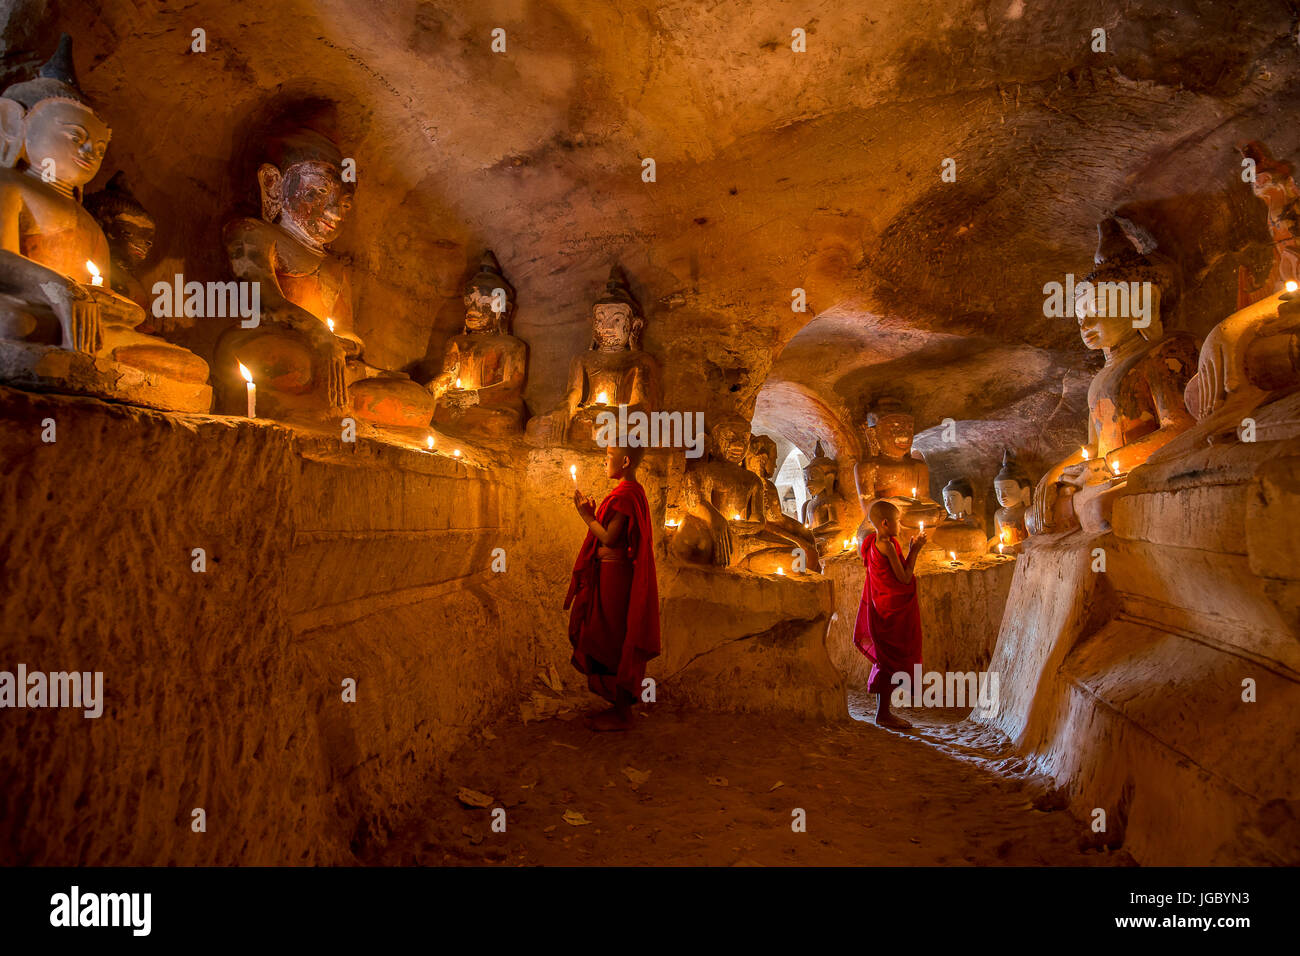 Moine novice bouddhiste priant l'intérieur Po Win Taung cave dans le nord du Myanmar - Rhône-Alpes - région - Myanmar Monywa Banque D'Images